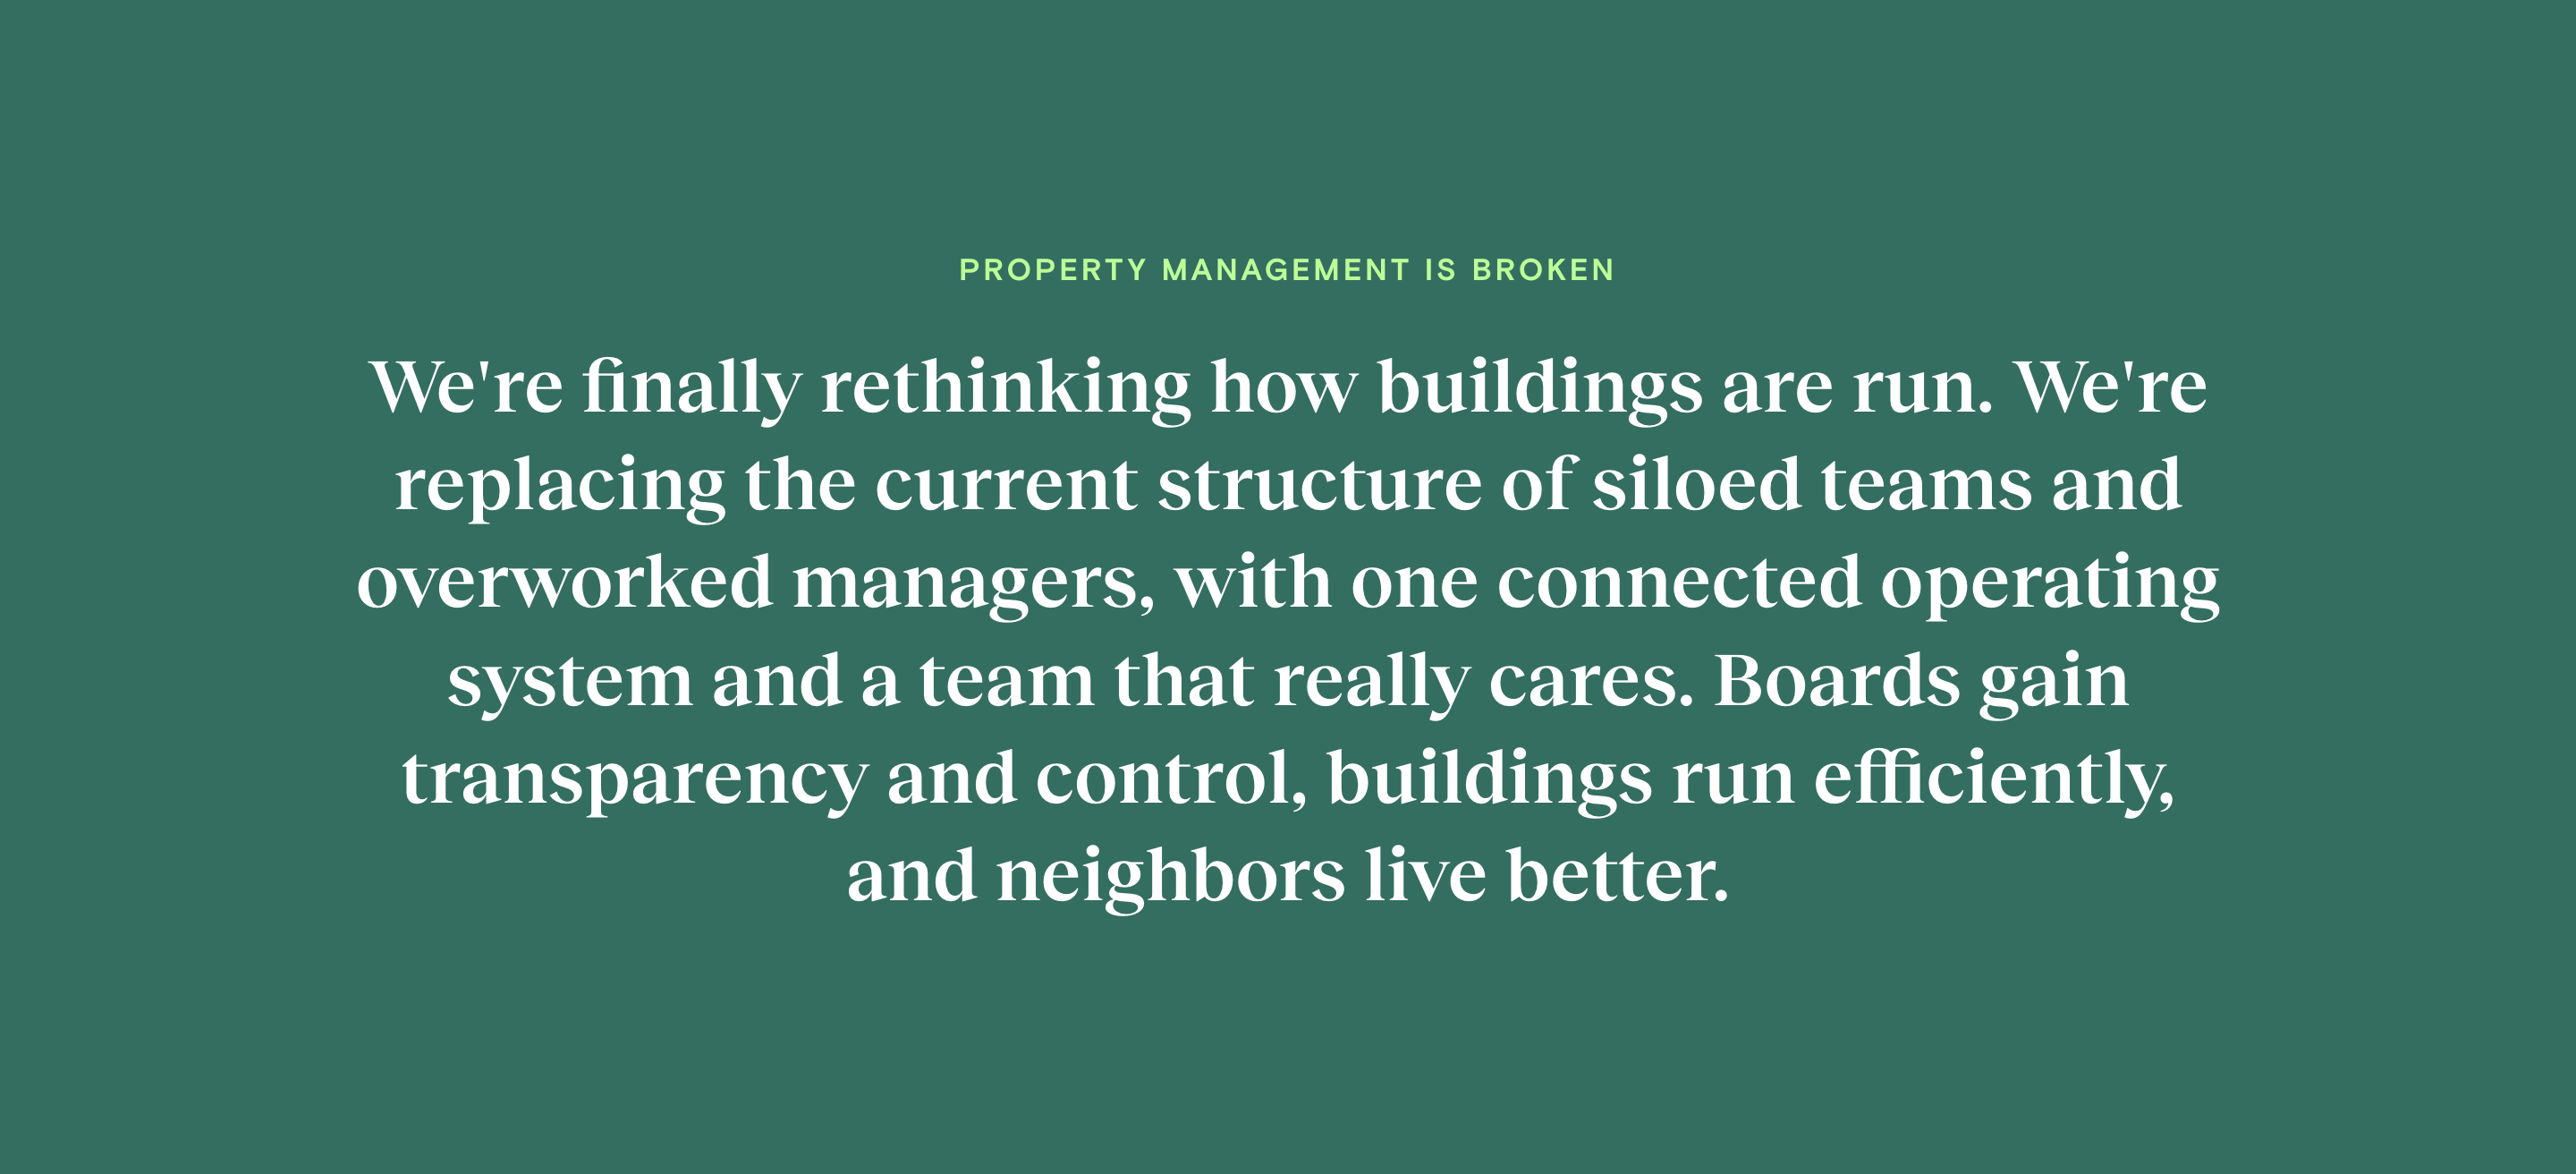 Property management is broken